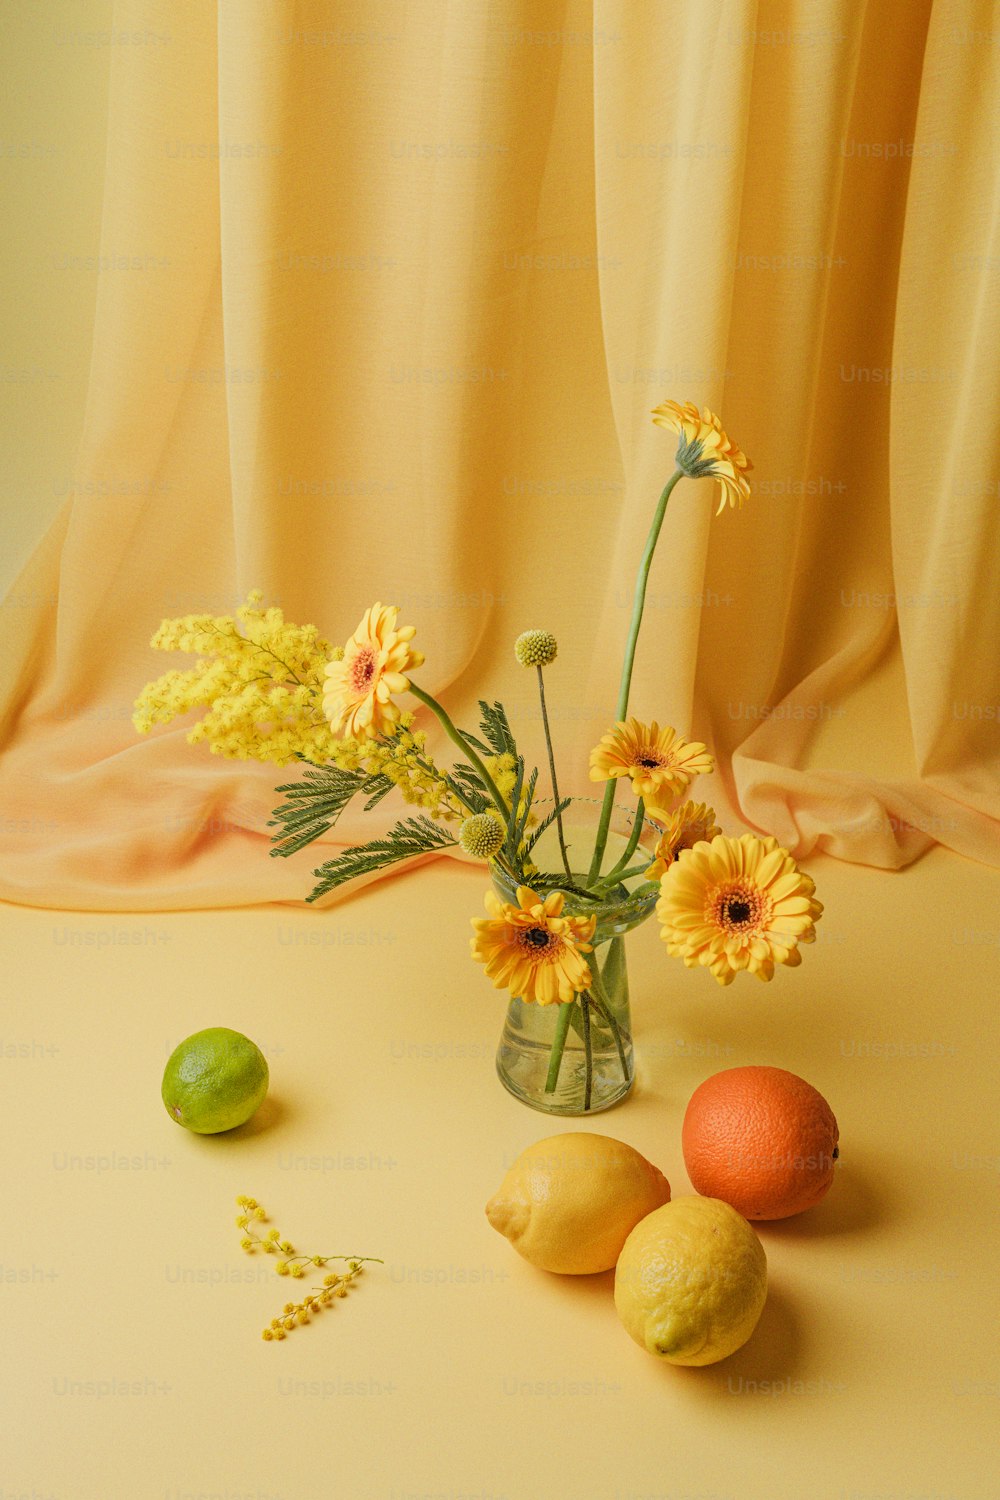 Un jarrón lleno de flores amarillas junto a limones